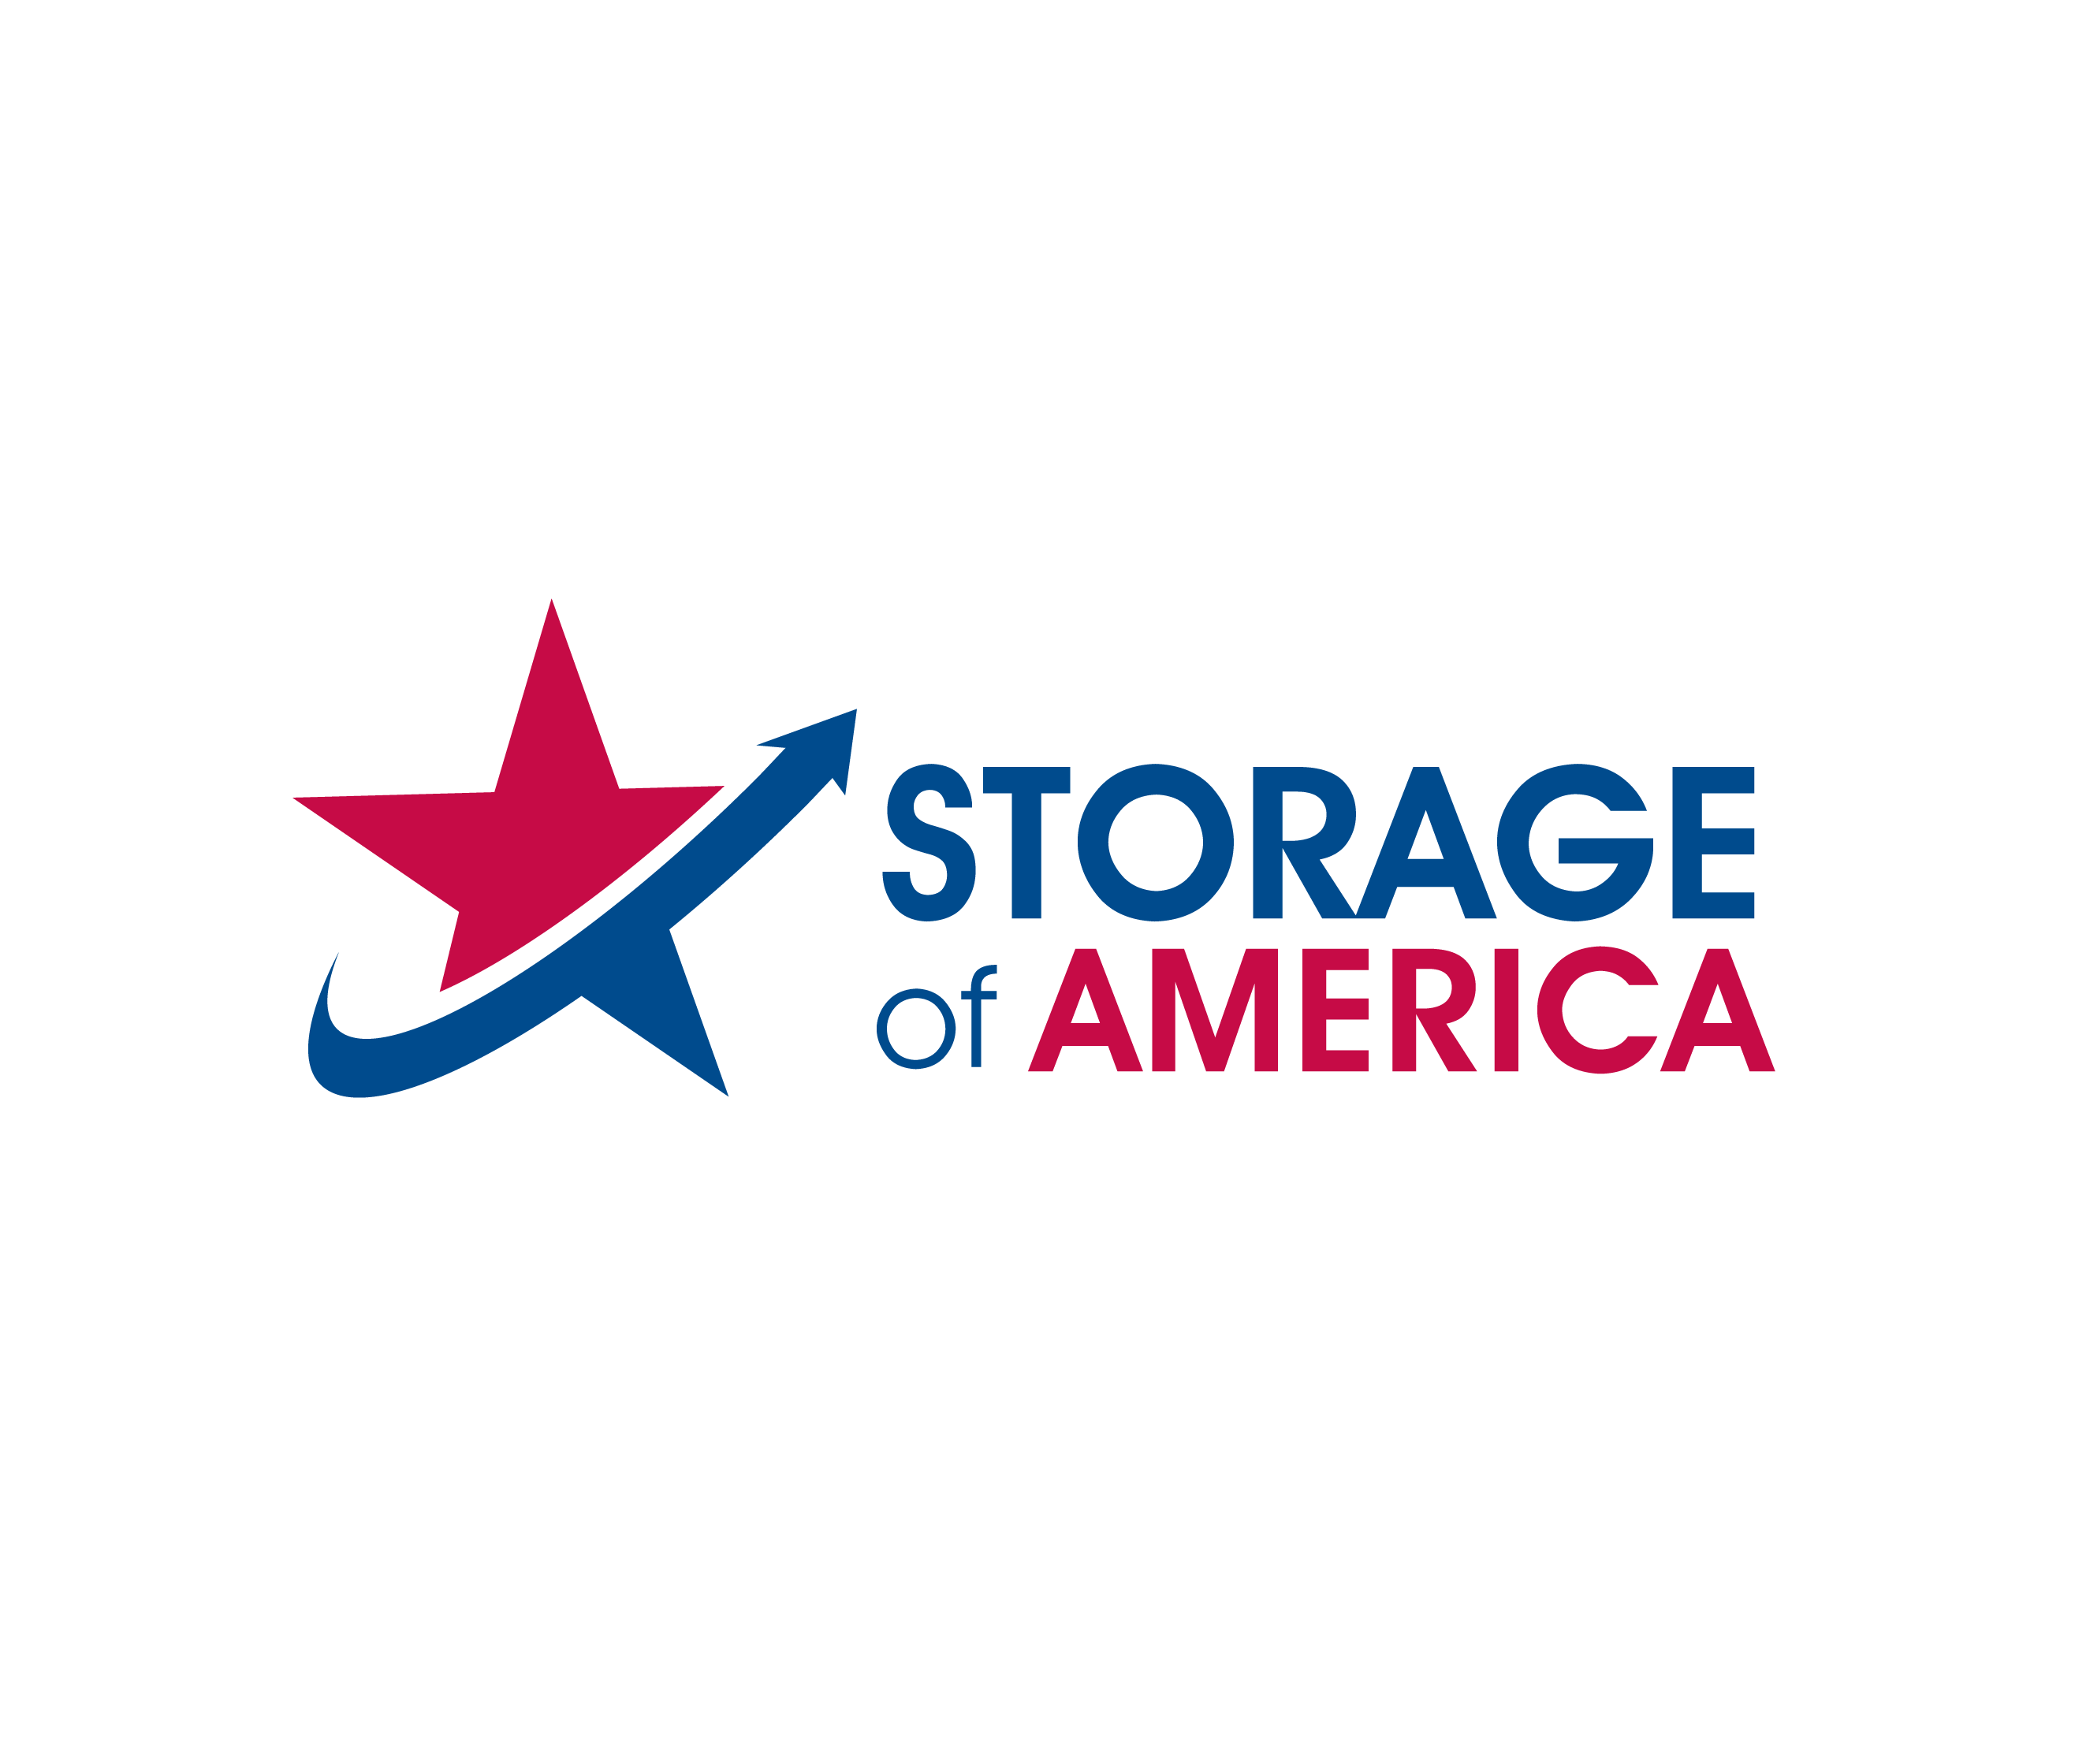 Storage of America Logo